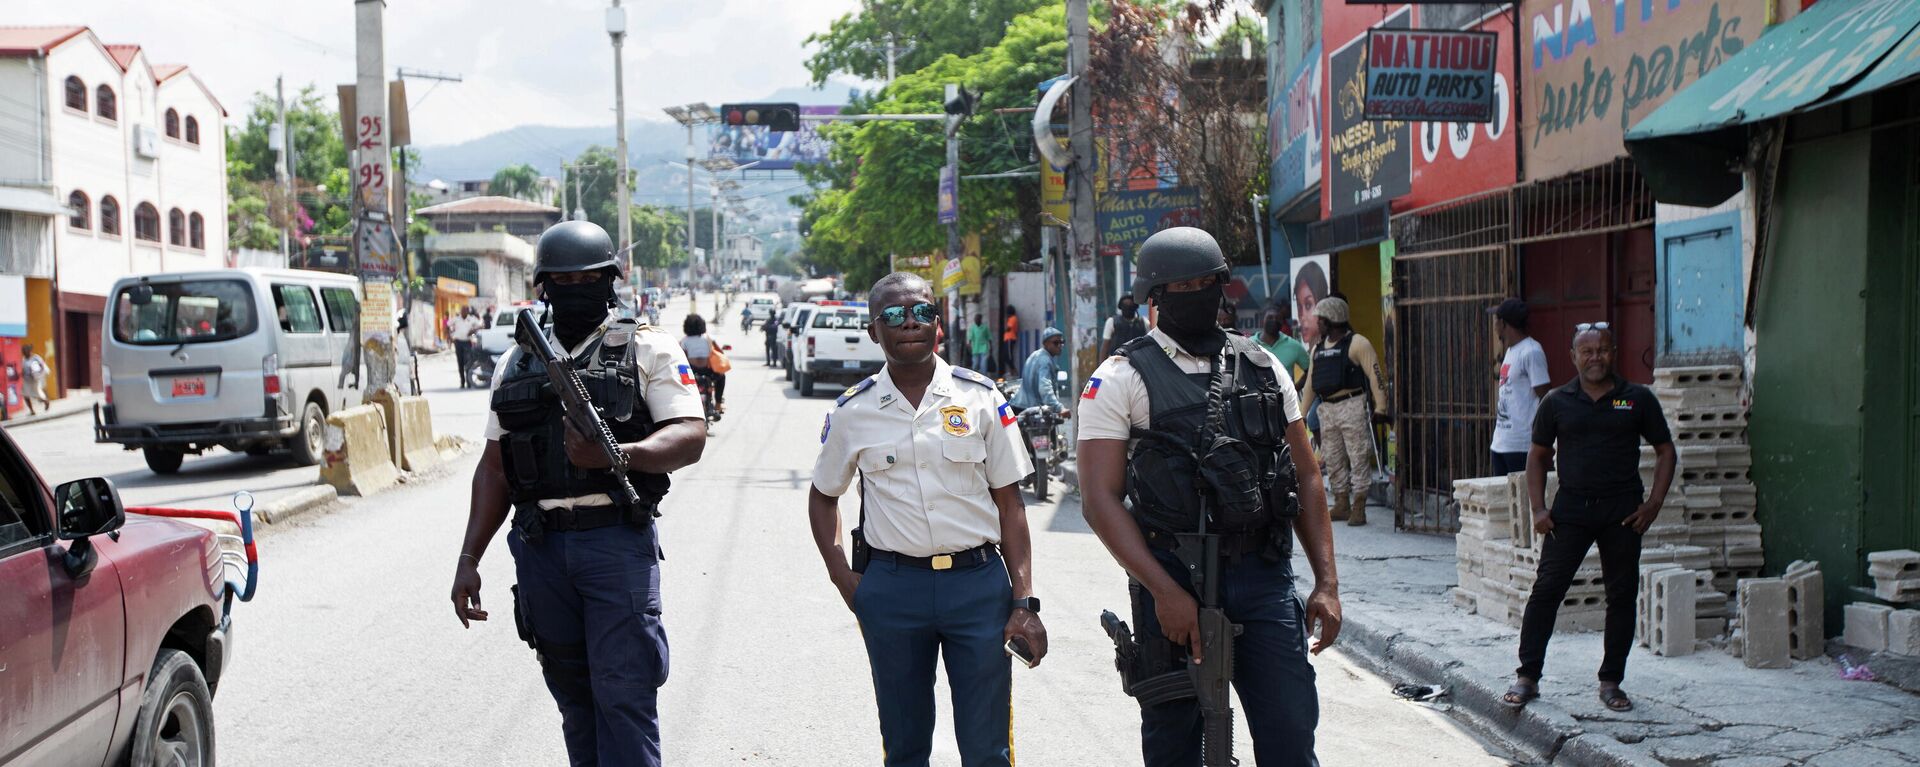 Policía en una calle de Puerto Príncipe, Haití - Sputnik Mundo, 1920, 25.10.2021